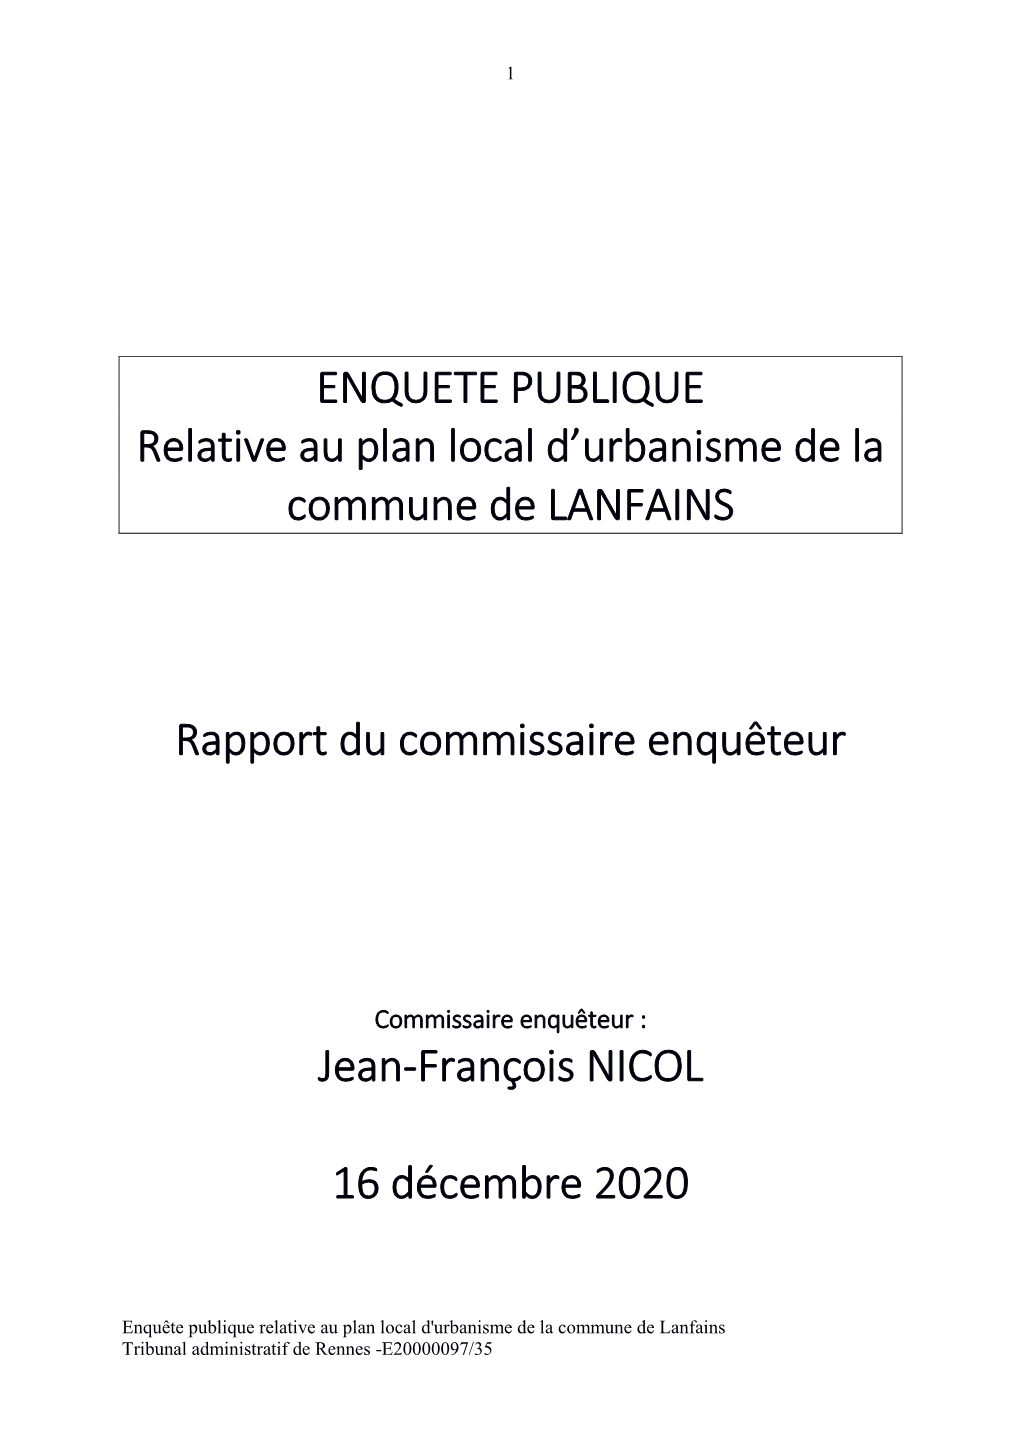 ENQUETE PUBLIQUE Relative Au Plan Local D'urbanisme De La Commune De LANFAINS Rapport Du Commissaire Enquêteur Jean-Franço